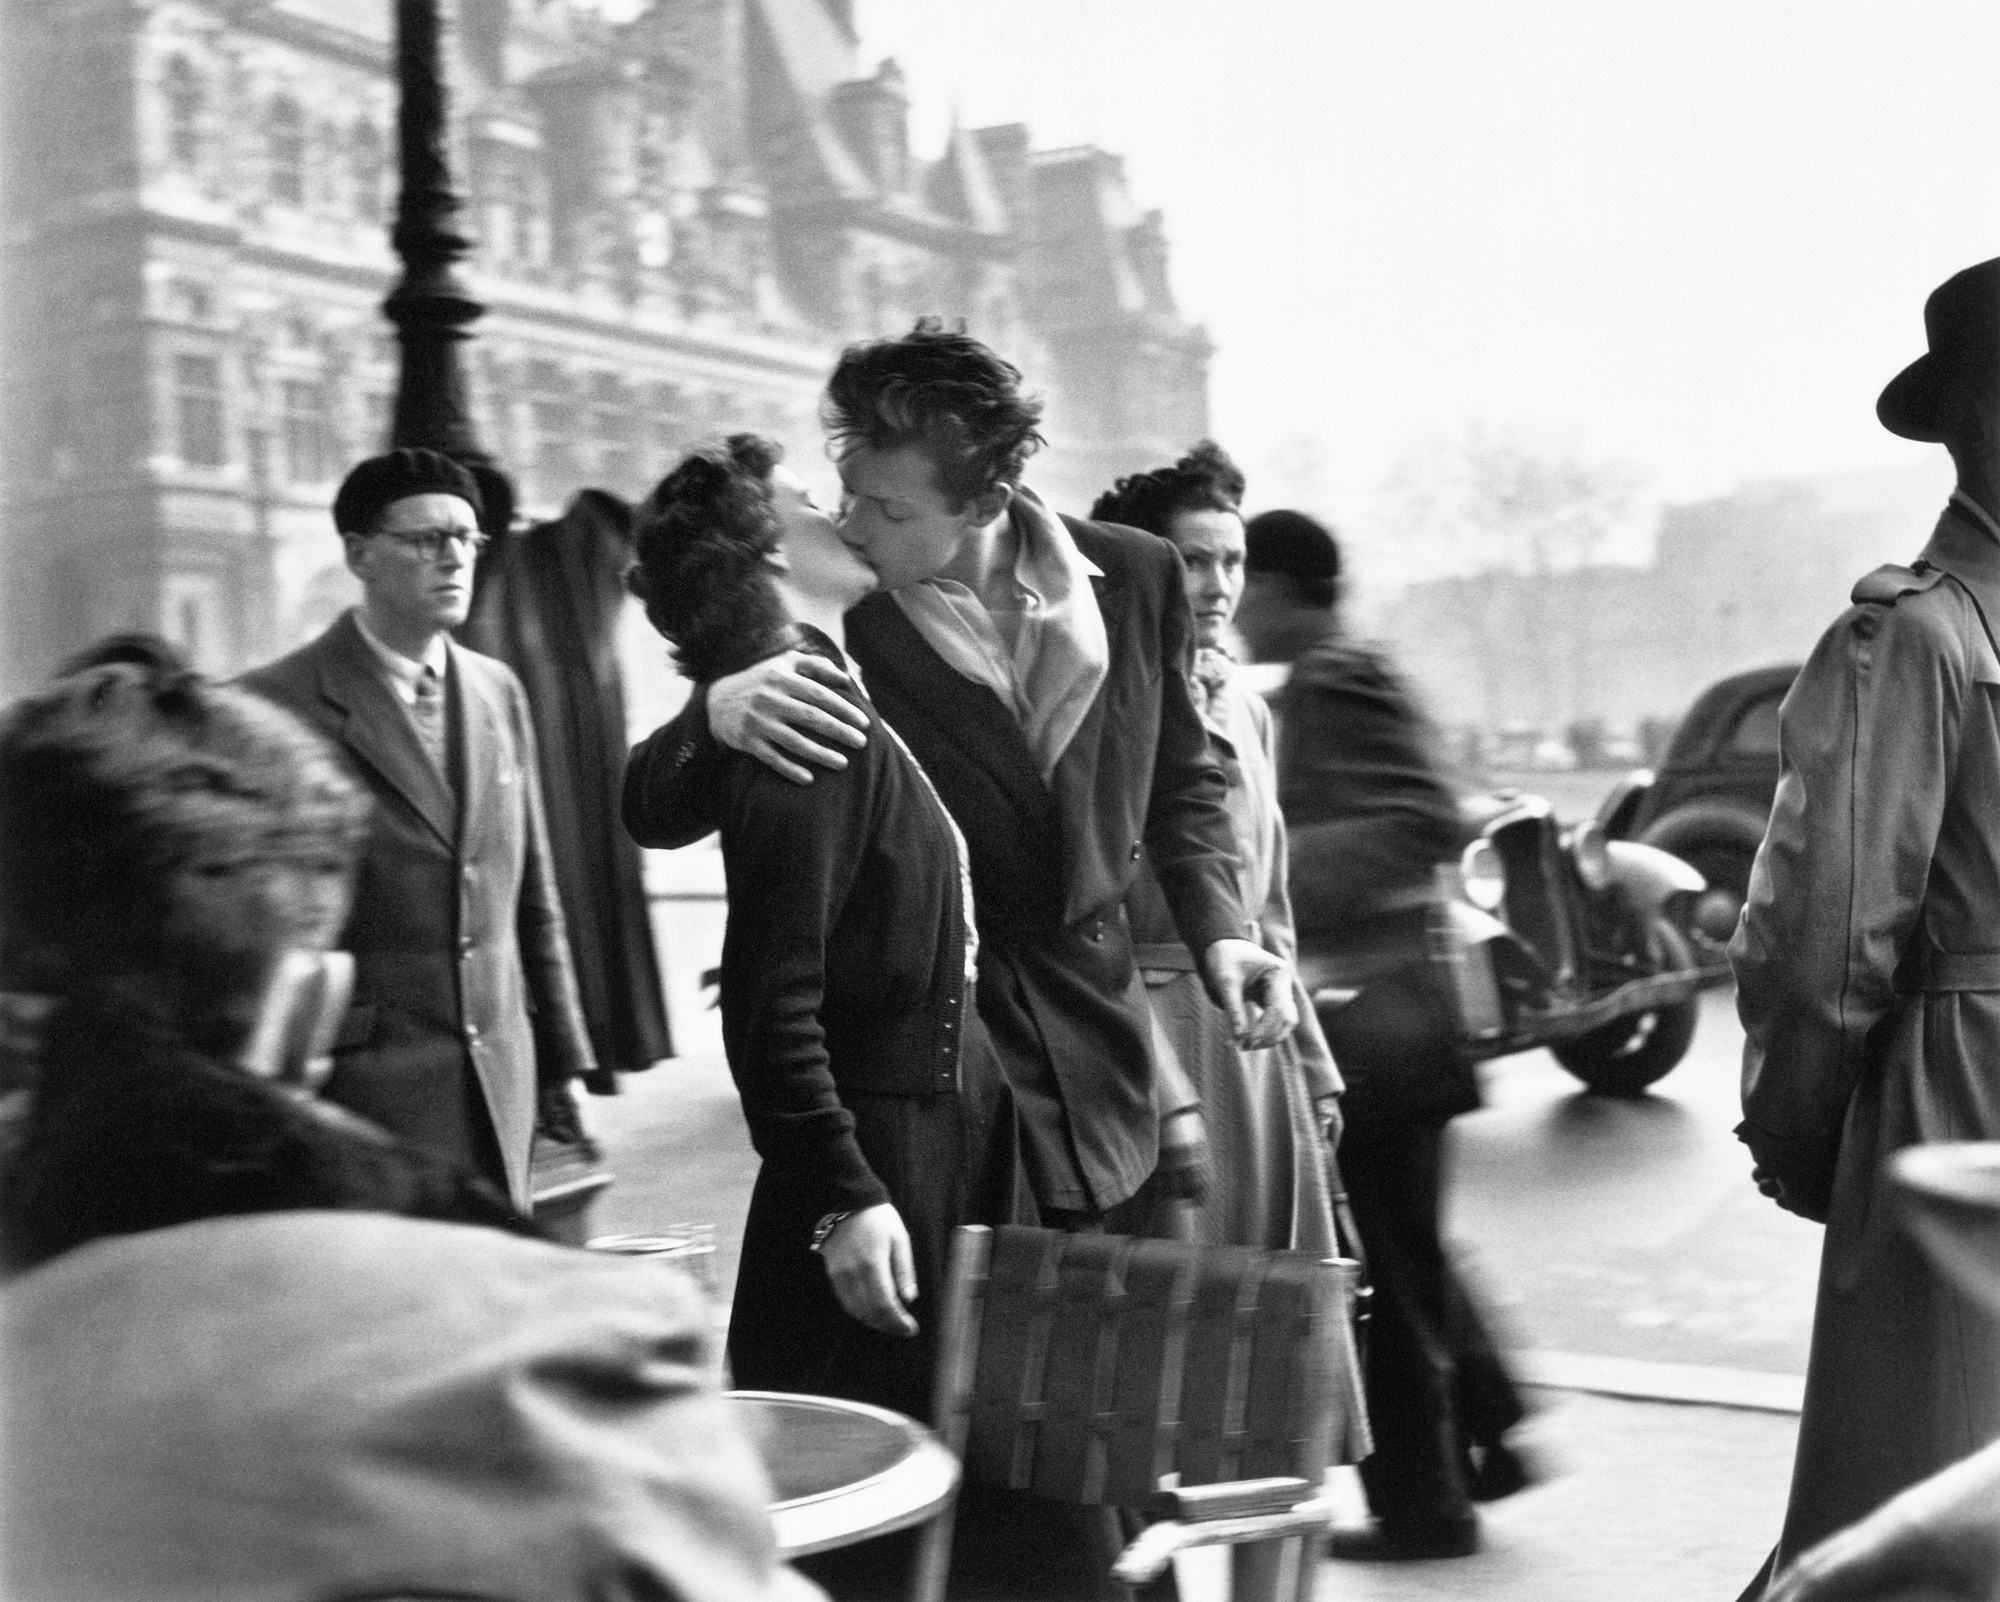 Le baiser de l'hôtel de ville, Paris (1950). L'une des plus célèbres photos de Robert Doisneau.